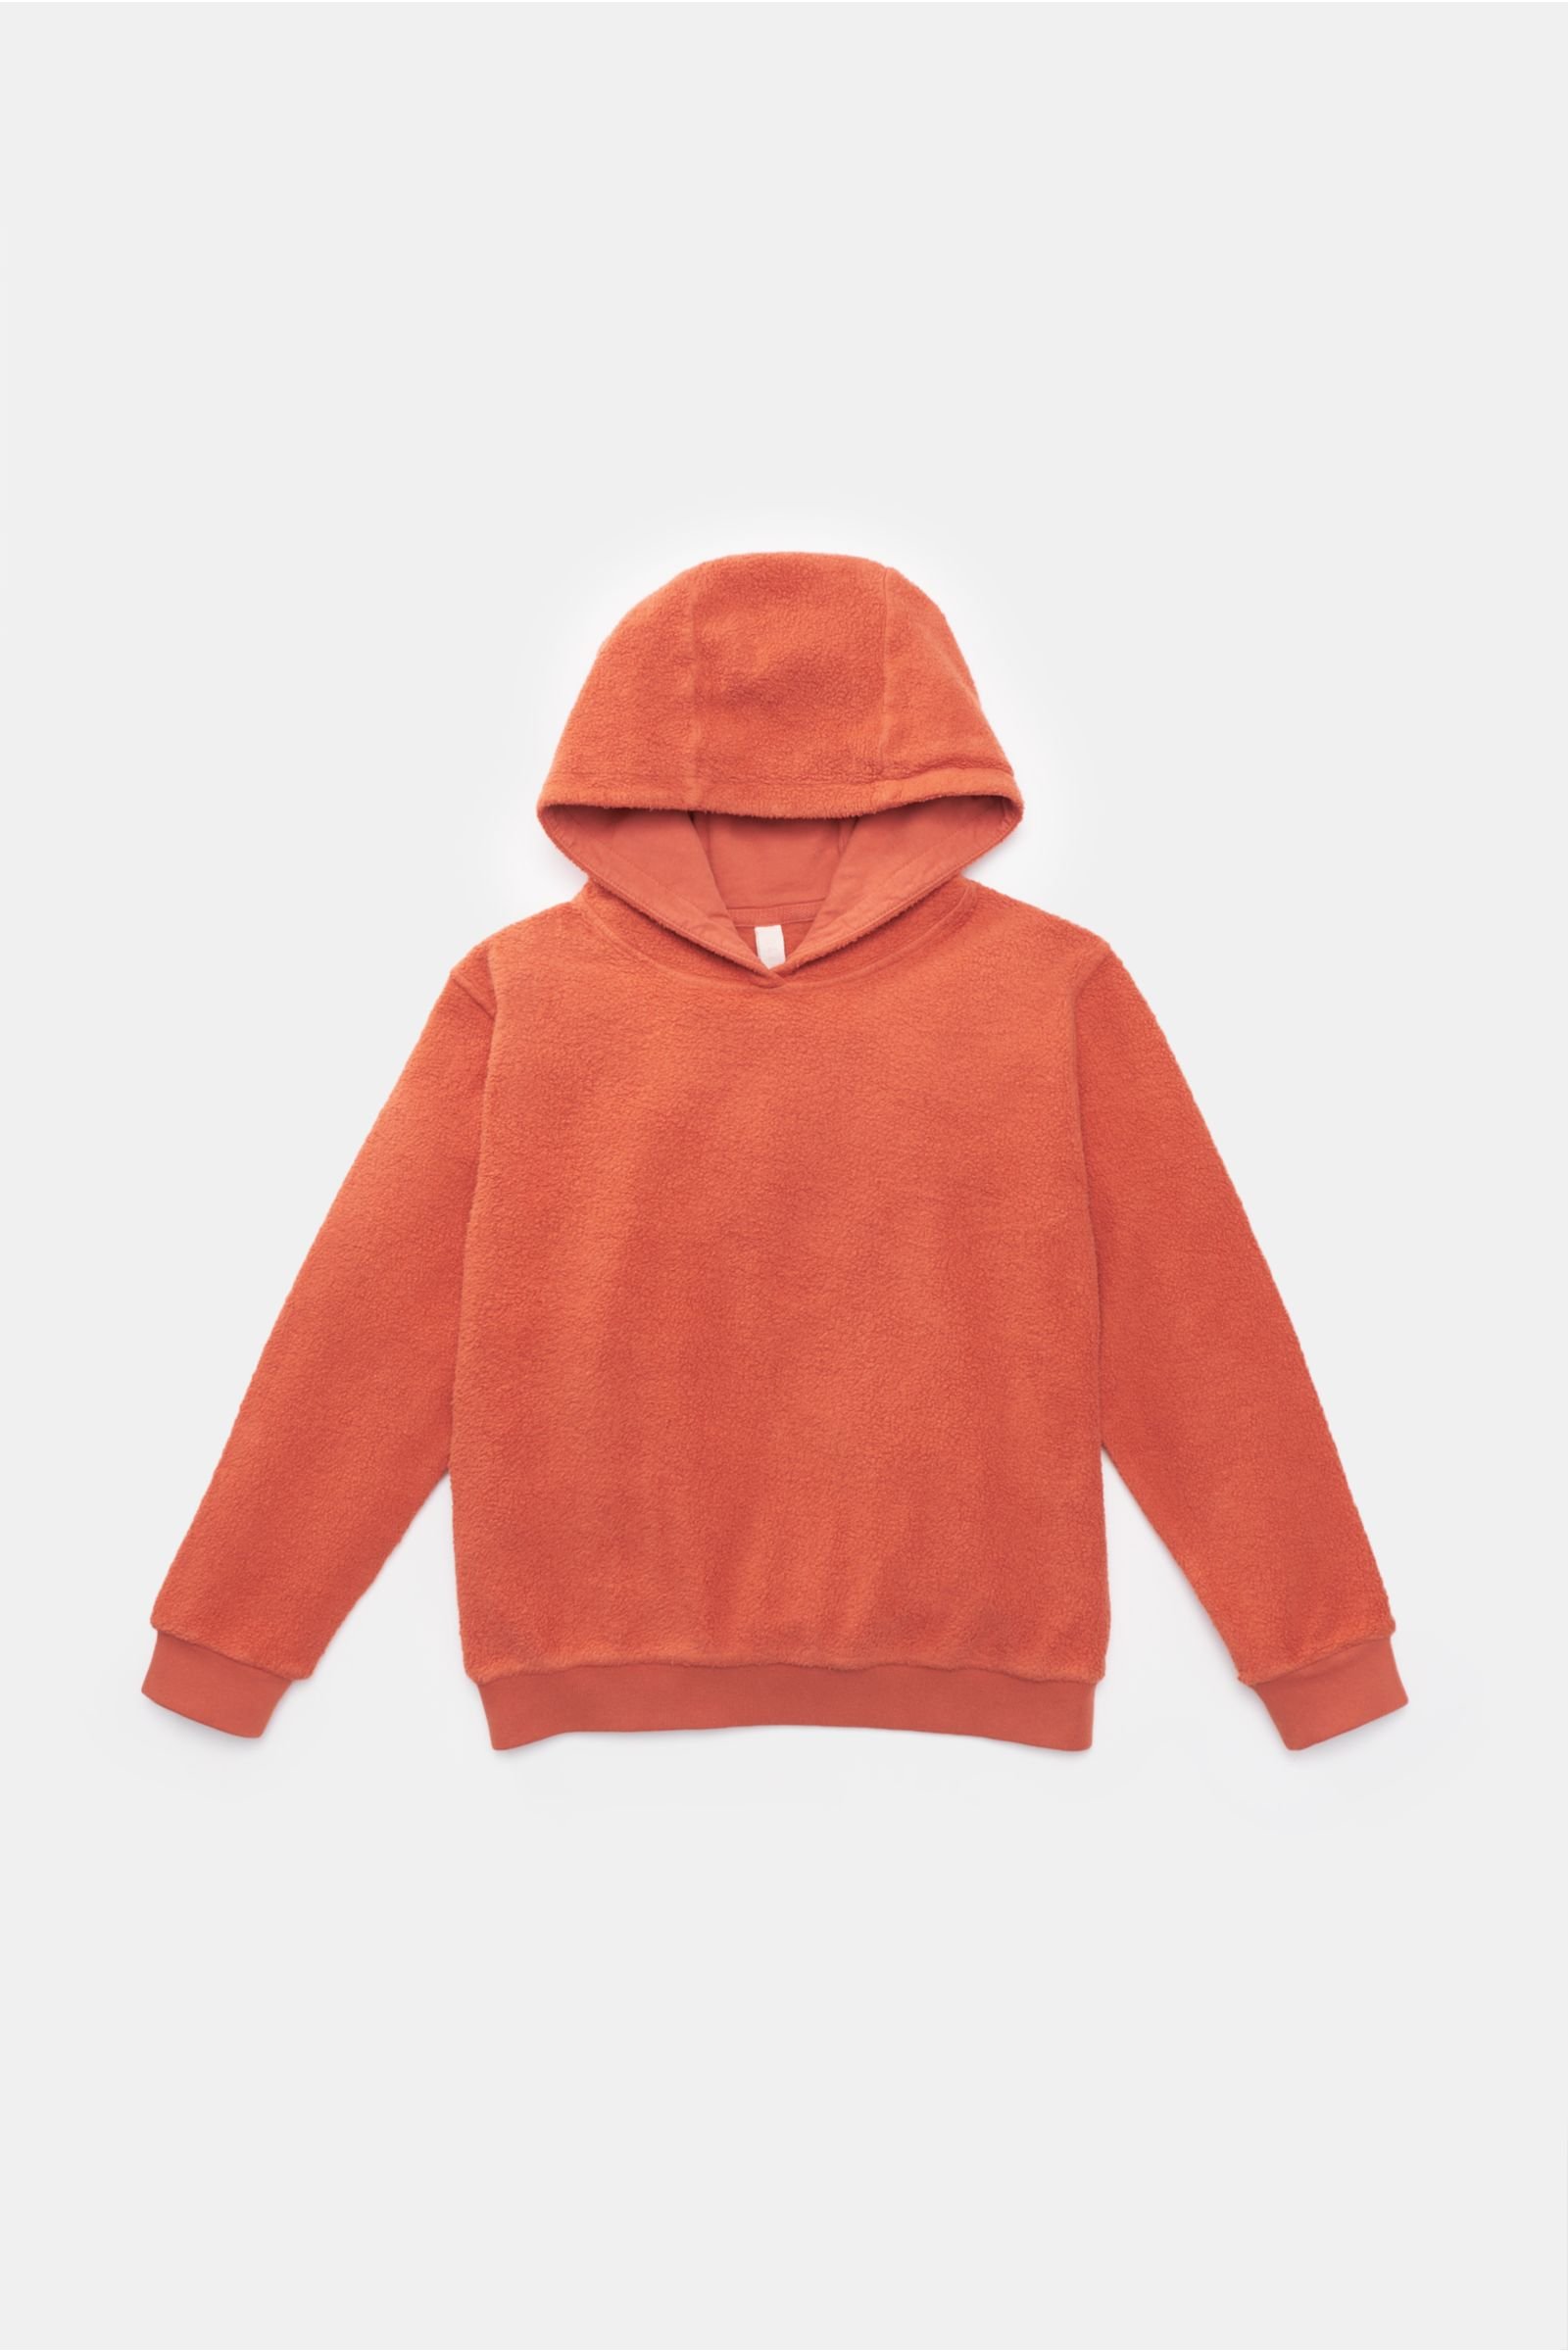 Kids fleece hooded jumper 'Oyster Kids PF Hoody' orange